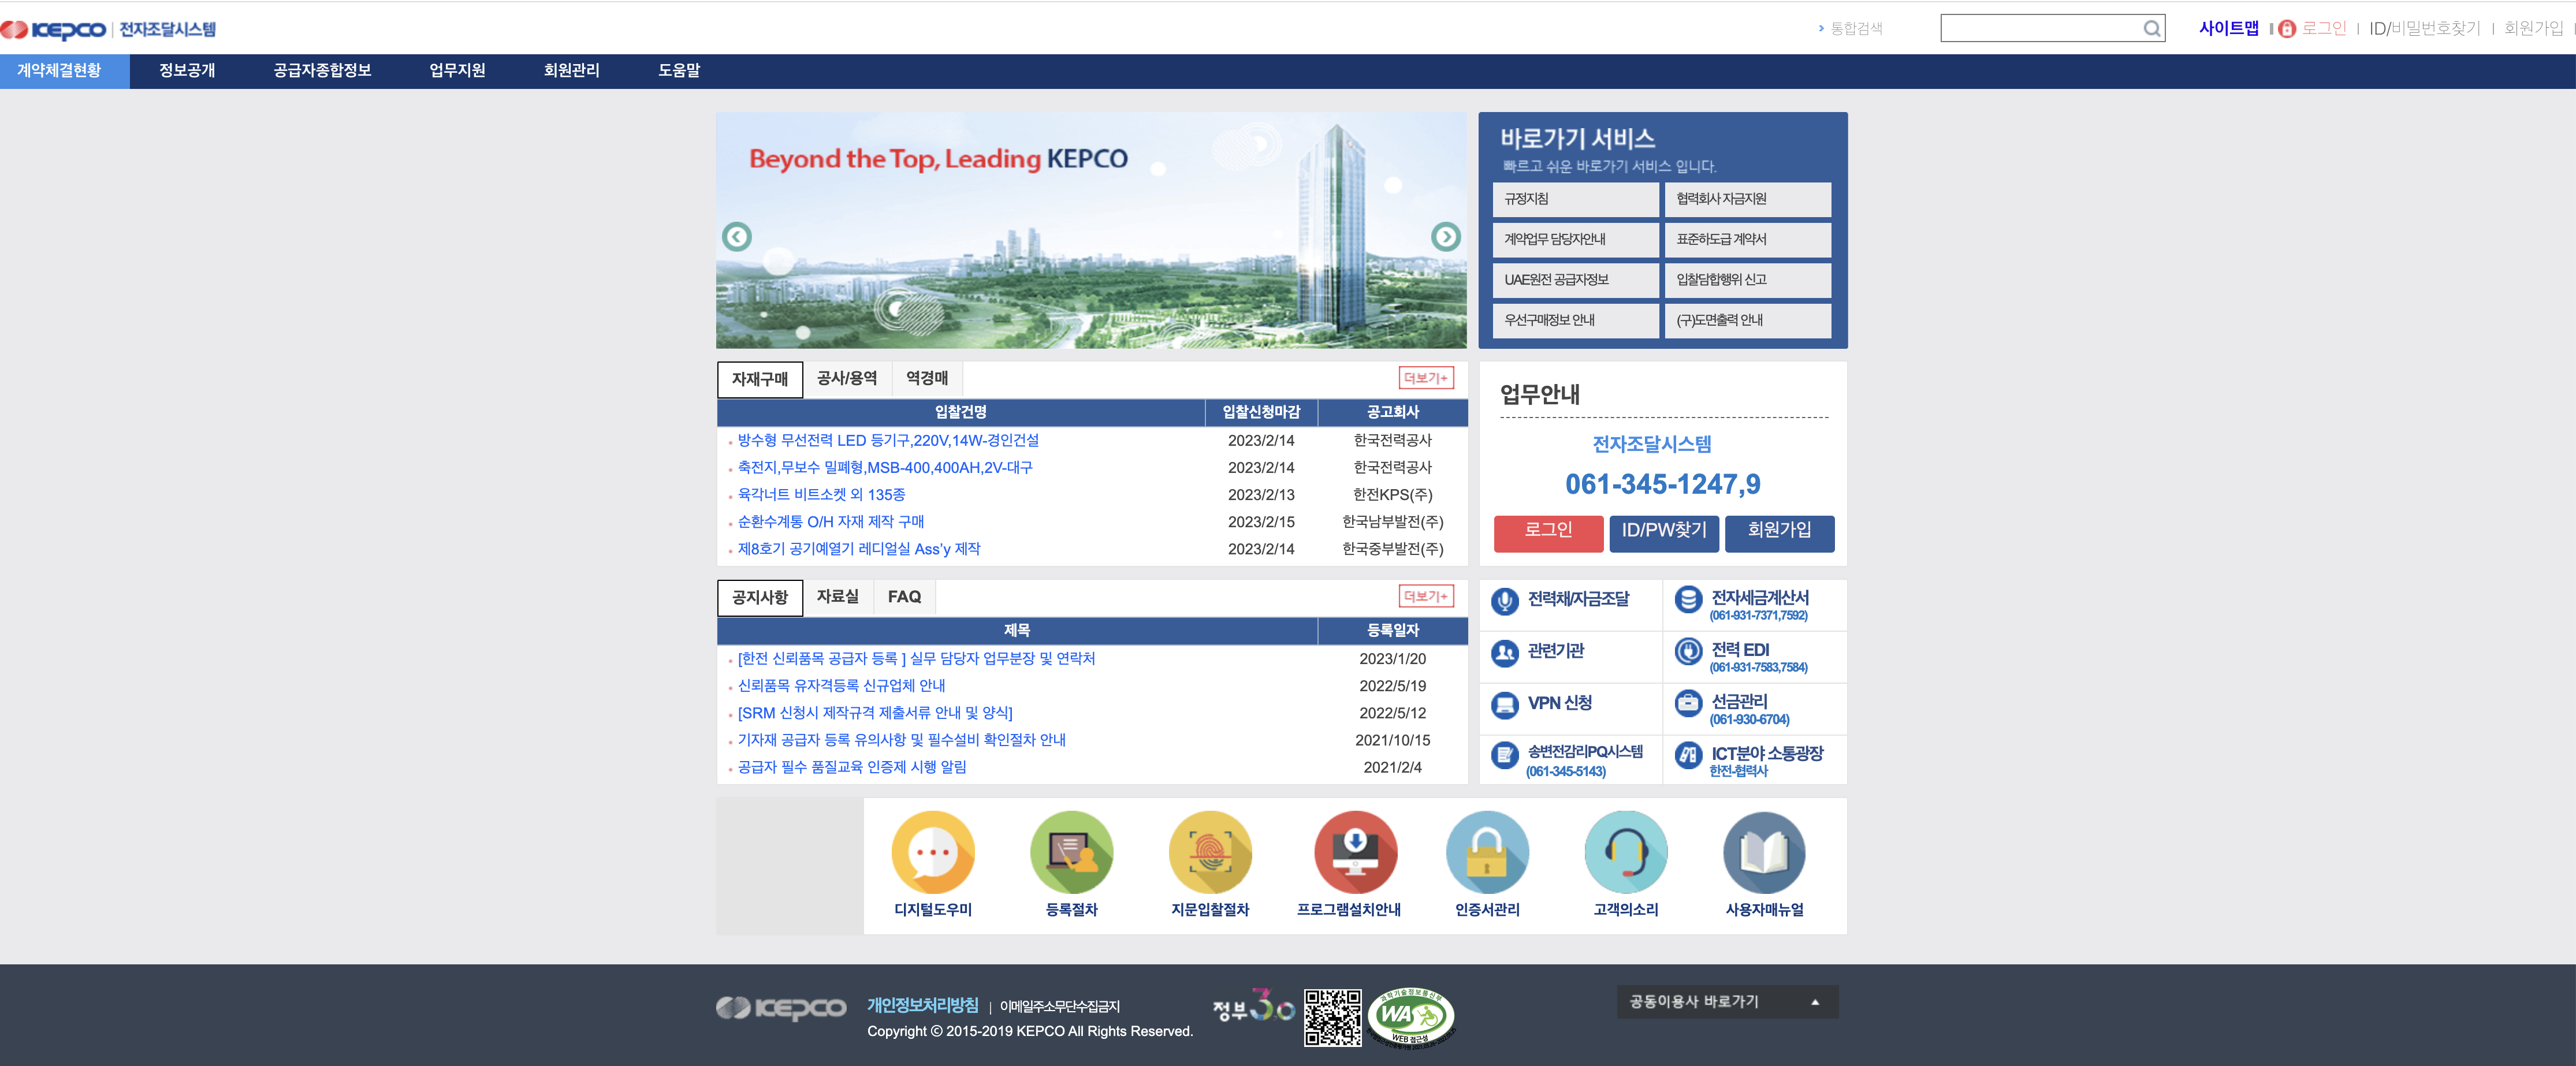 한국전력 전자조달 시스템 (https://srm.kepco.net)